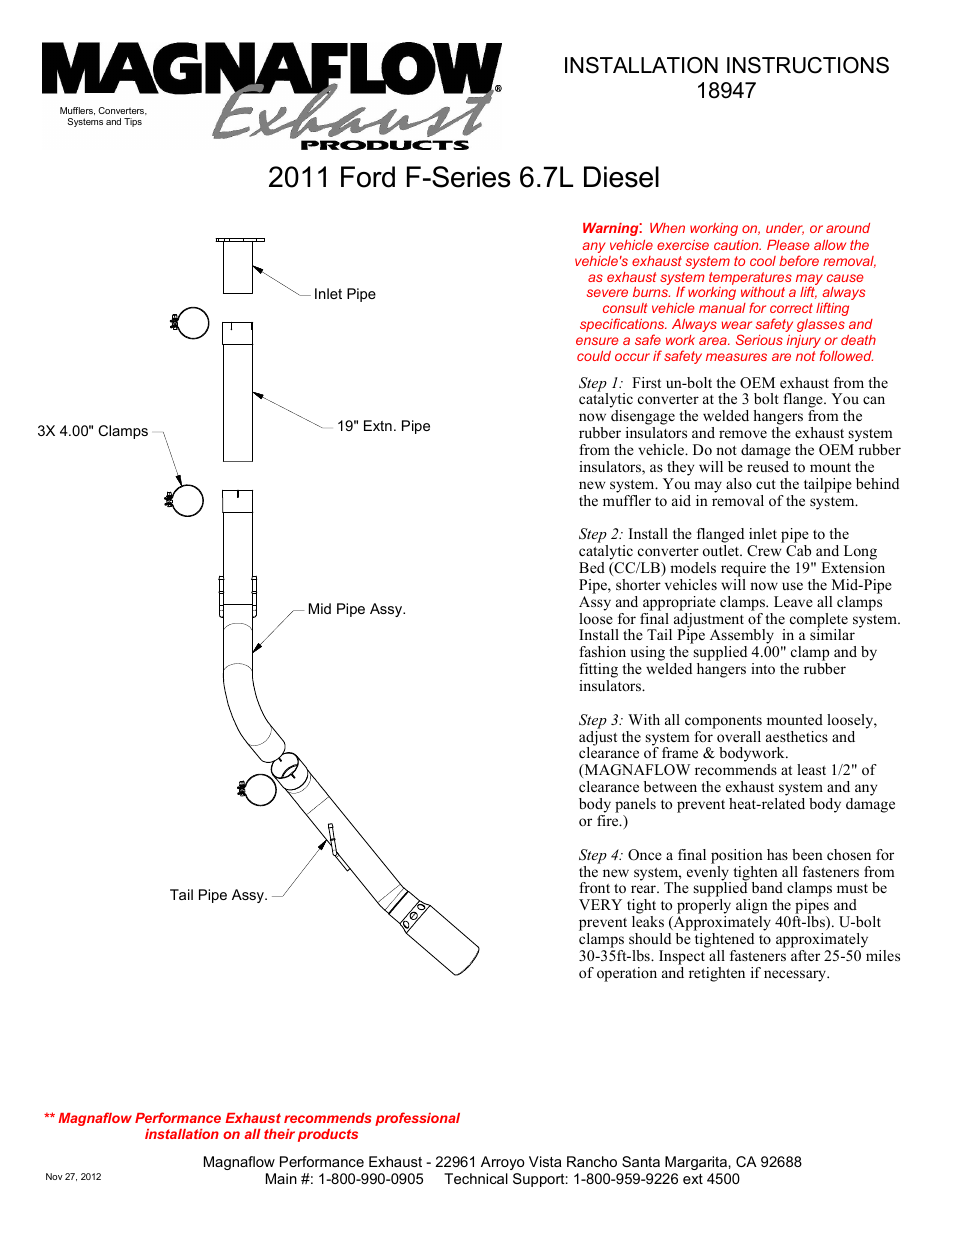 FORD DIESEL 6.7L DIESEL, 4in Aluminized Pro Series Diesel PERFORMANCE EXHAUST